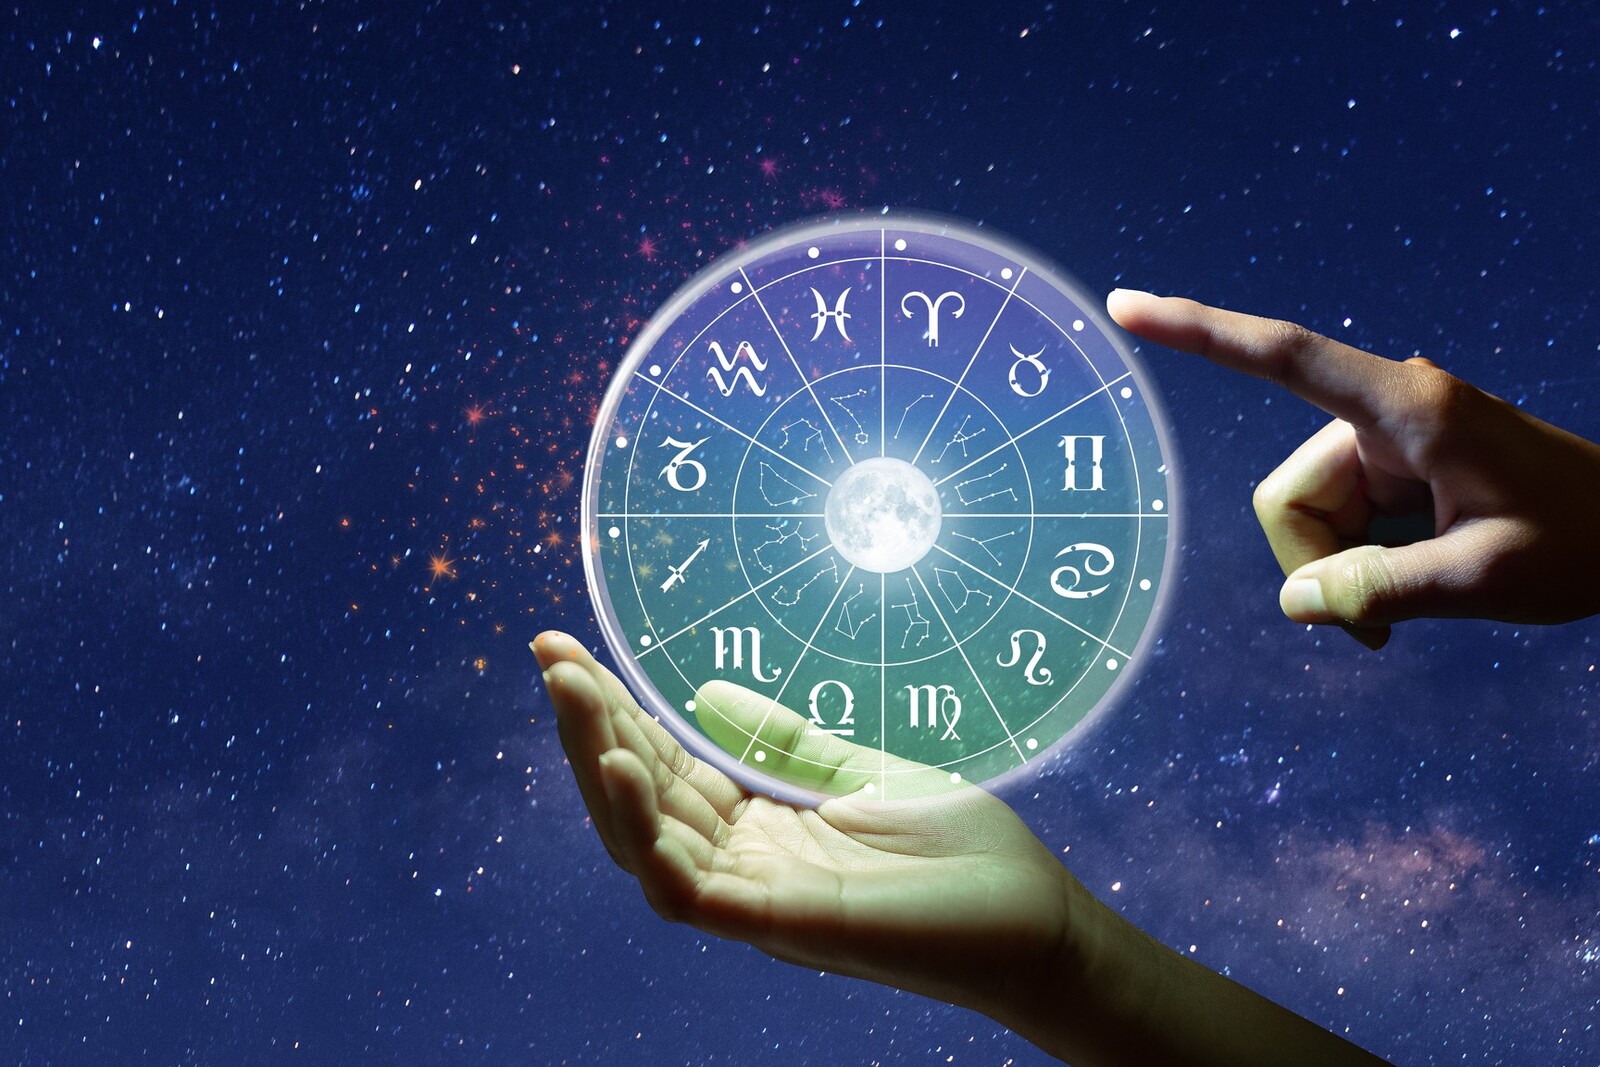 Los 12 signos del Zodiaco en una rueda transparante sujetada por una mano y el dedo índice